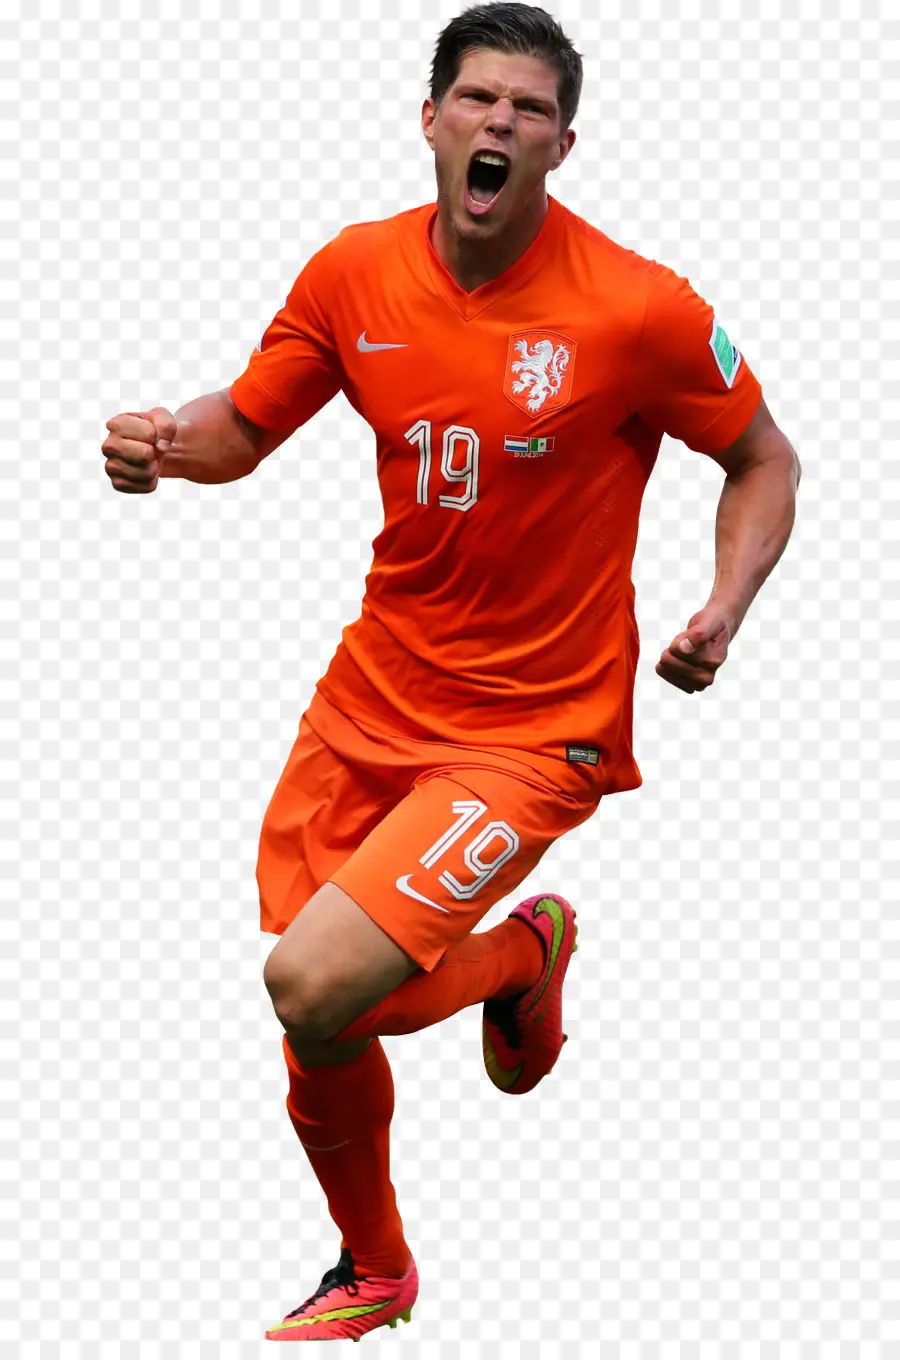 Klaasjan Huntelaar，El Equipo Nacional De Fútbol De Los Países Bajos PNG